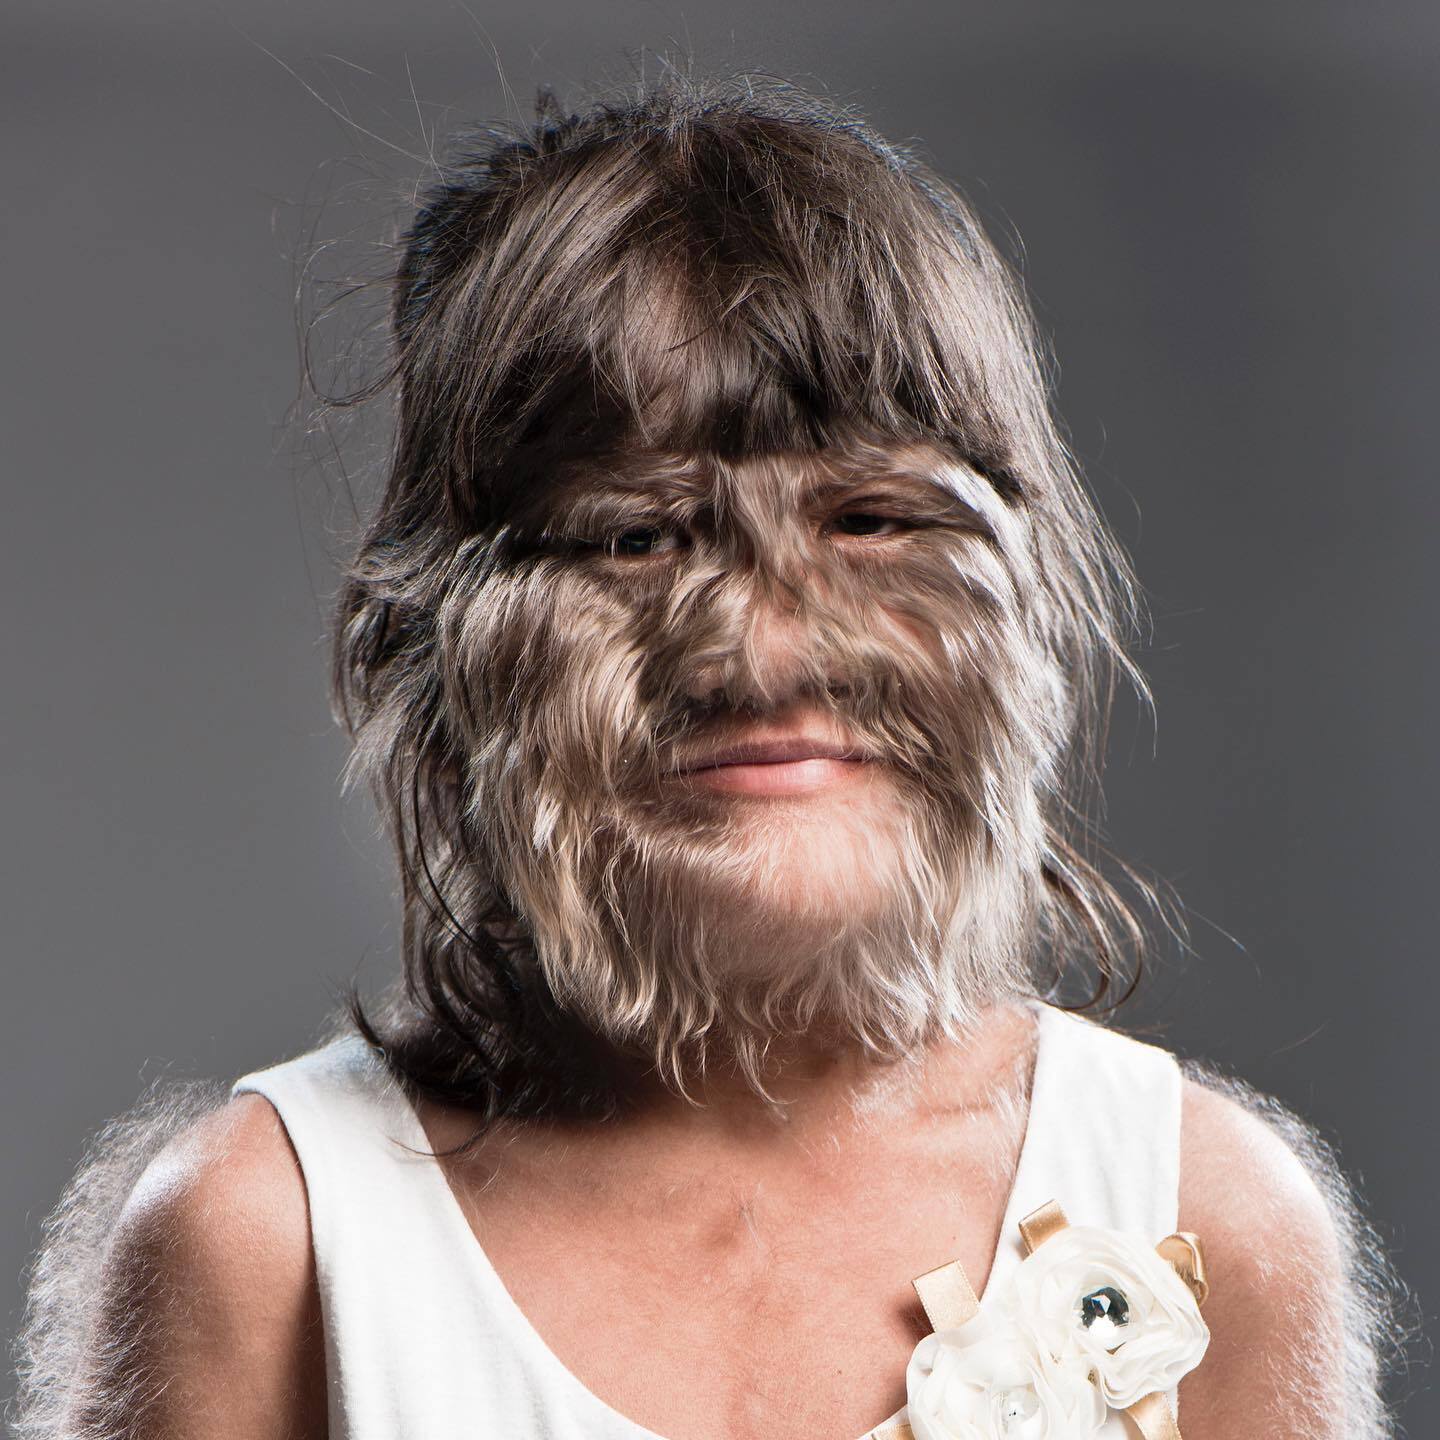 Как выглядит сегодня самая волосатая женщина мира из Книги рекордов Гиннеса: вышла замуж и начала бриться